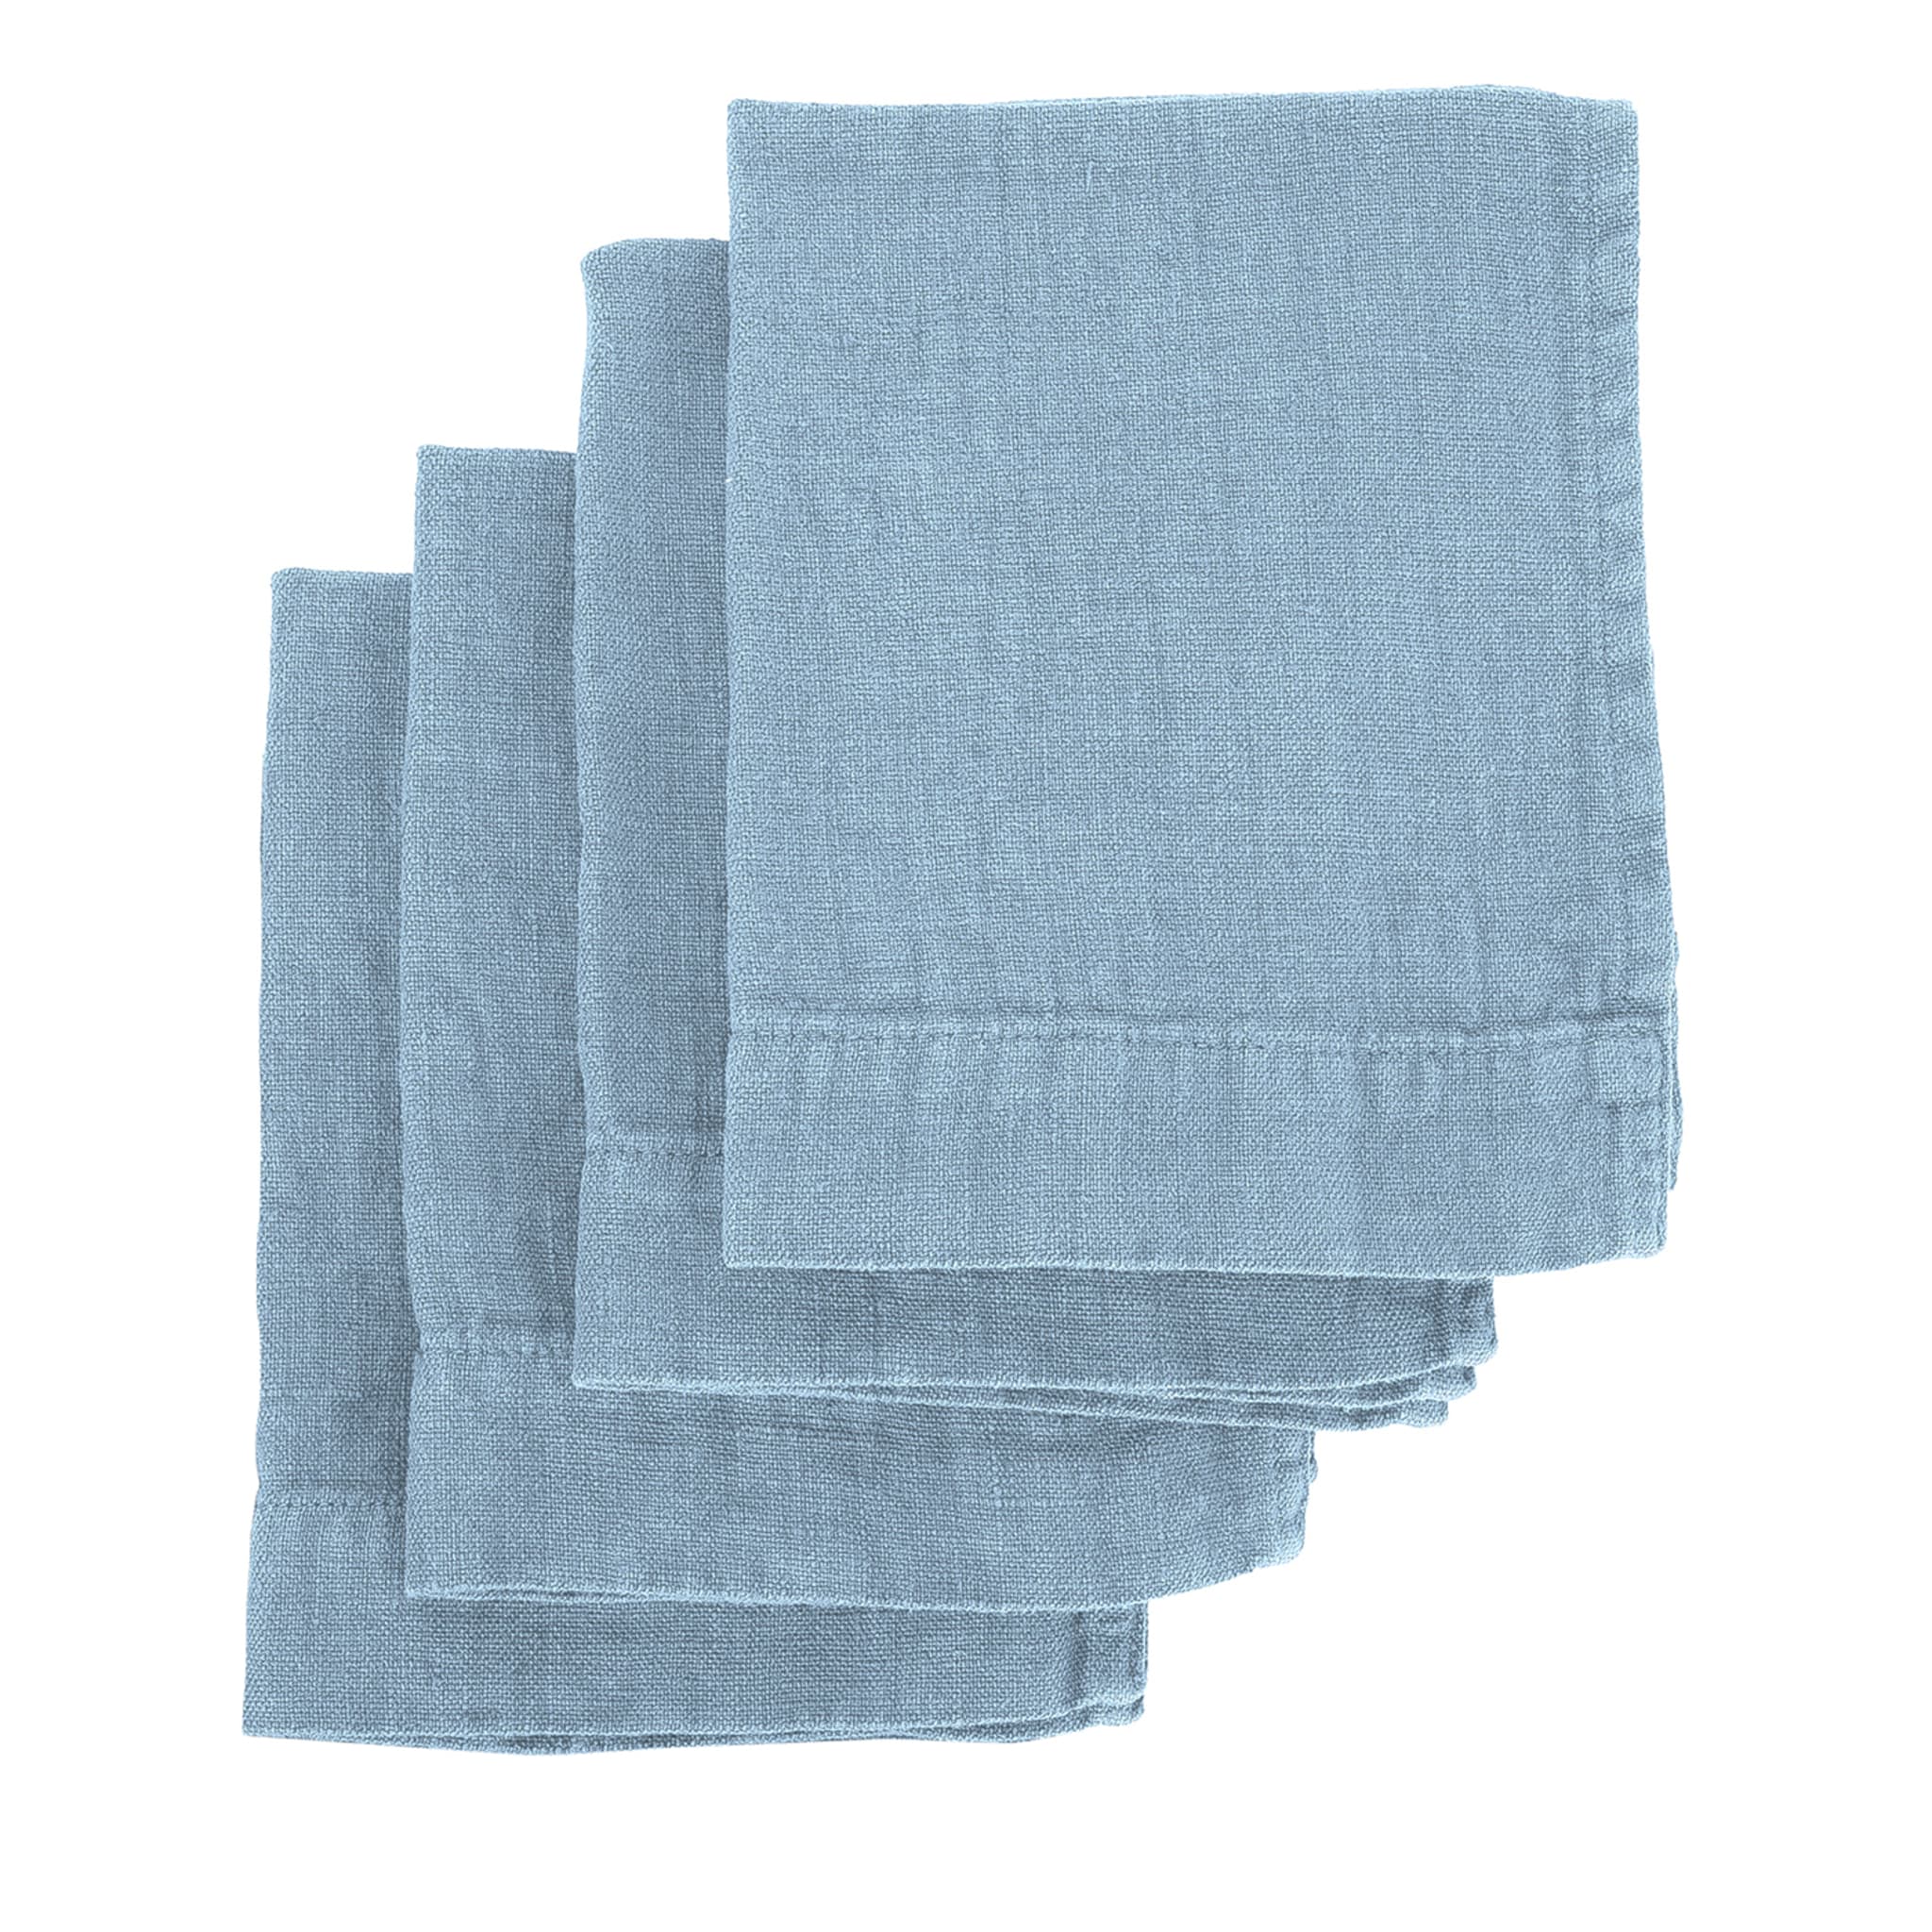 Set of 4 Light Blue Linen Hand Towels - Alternative view 1